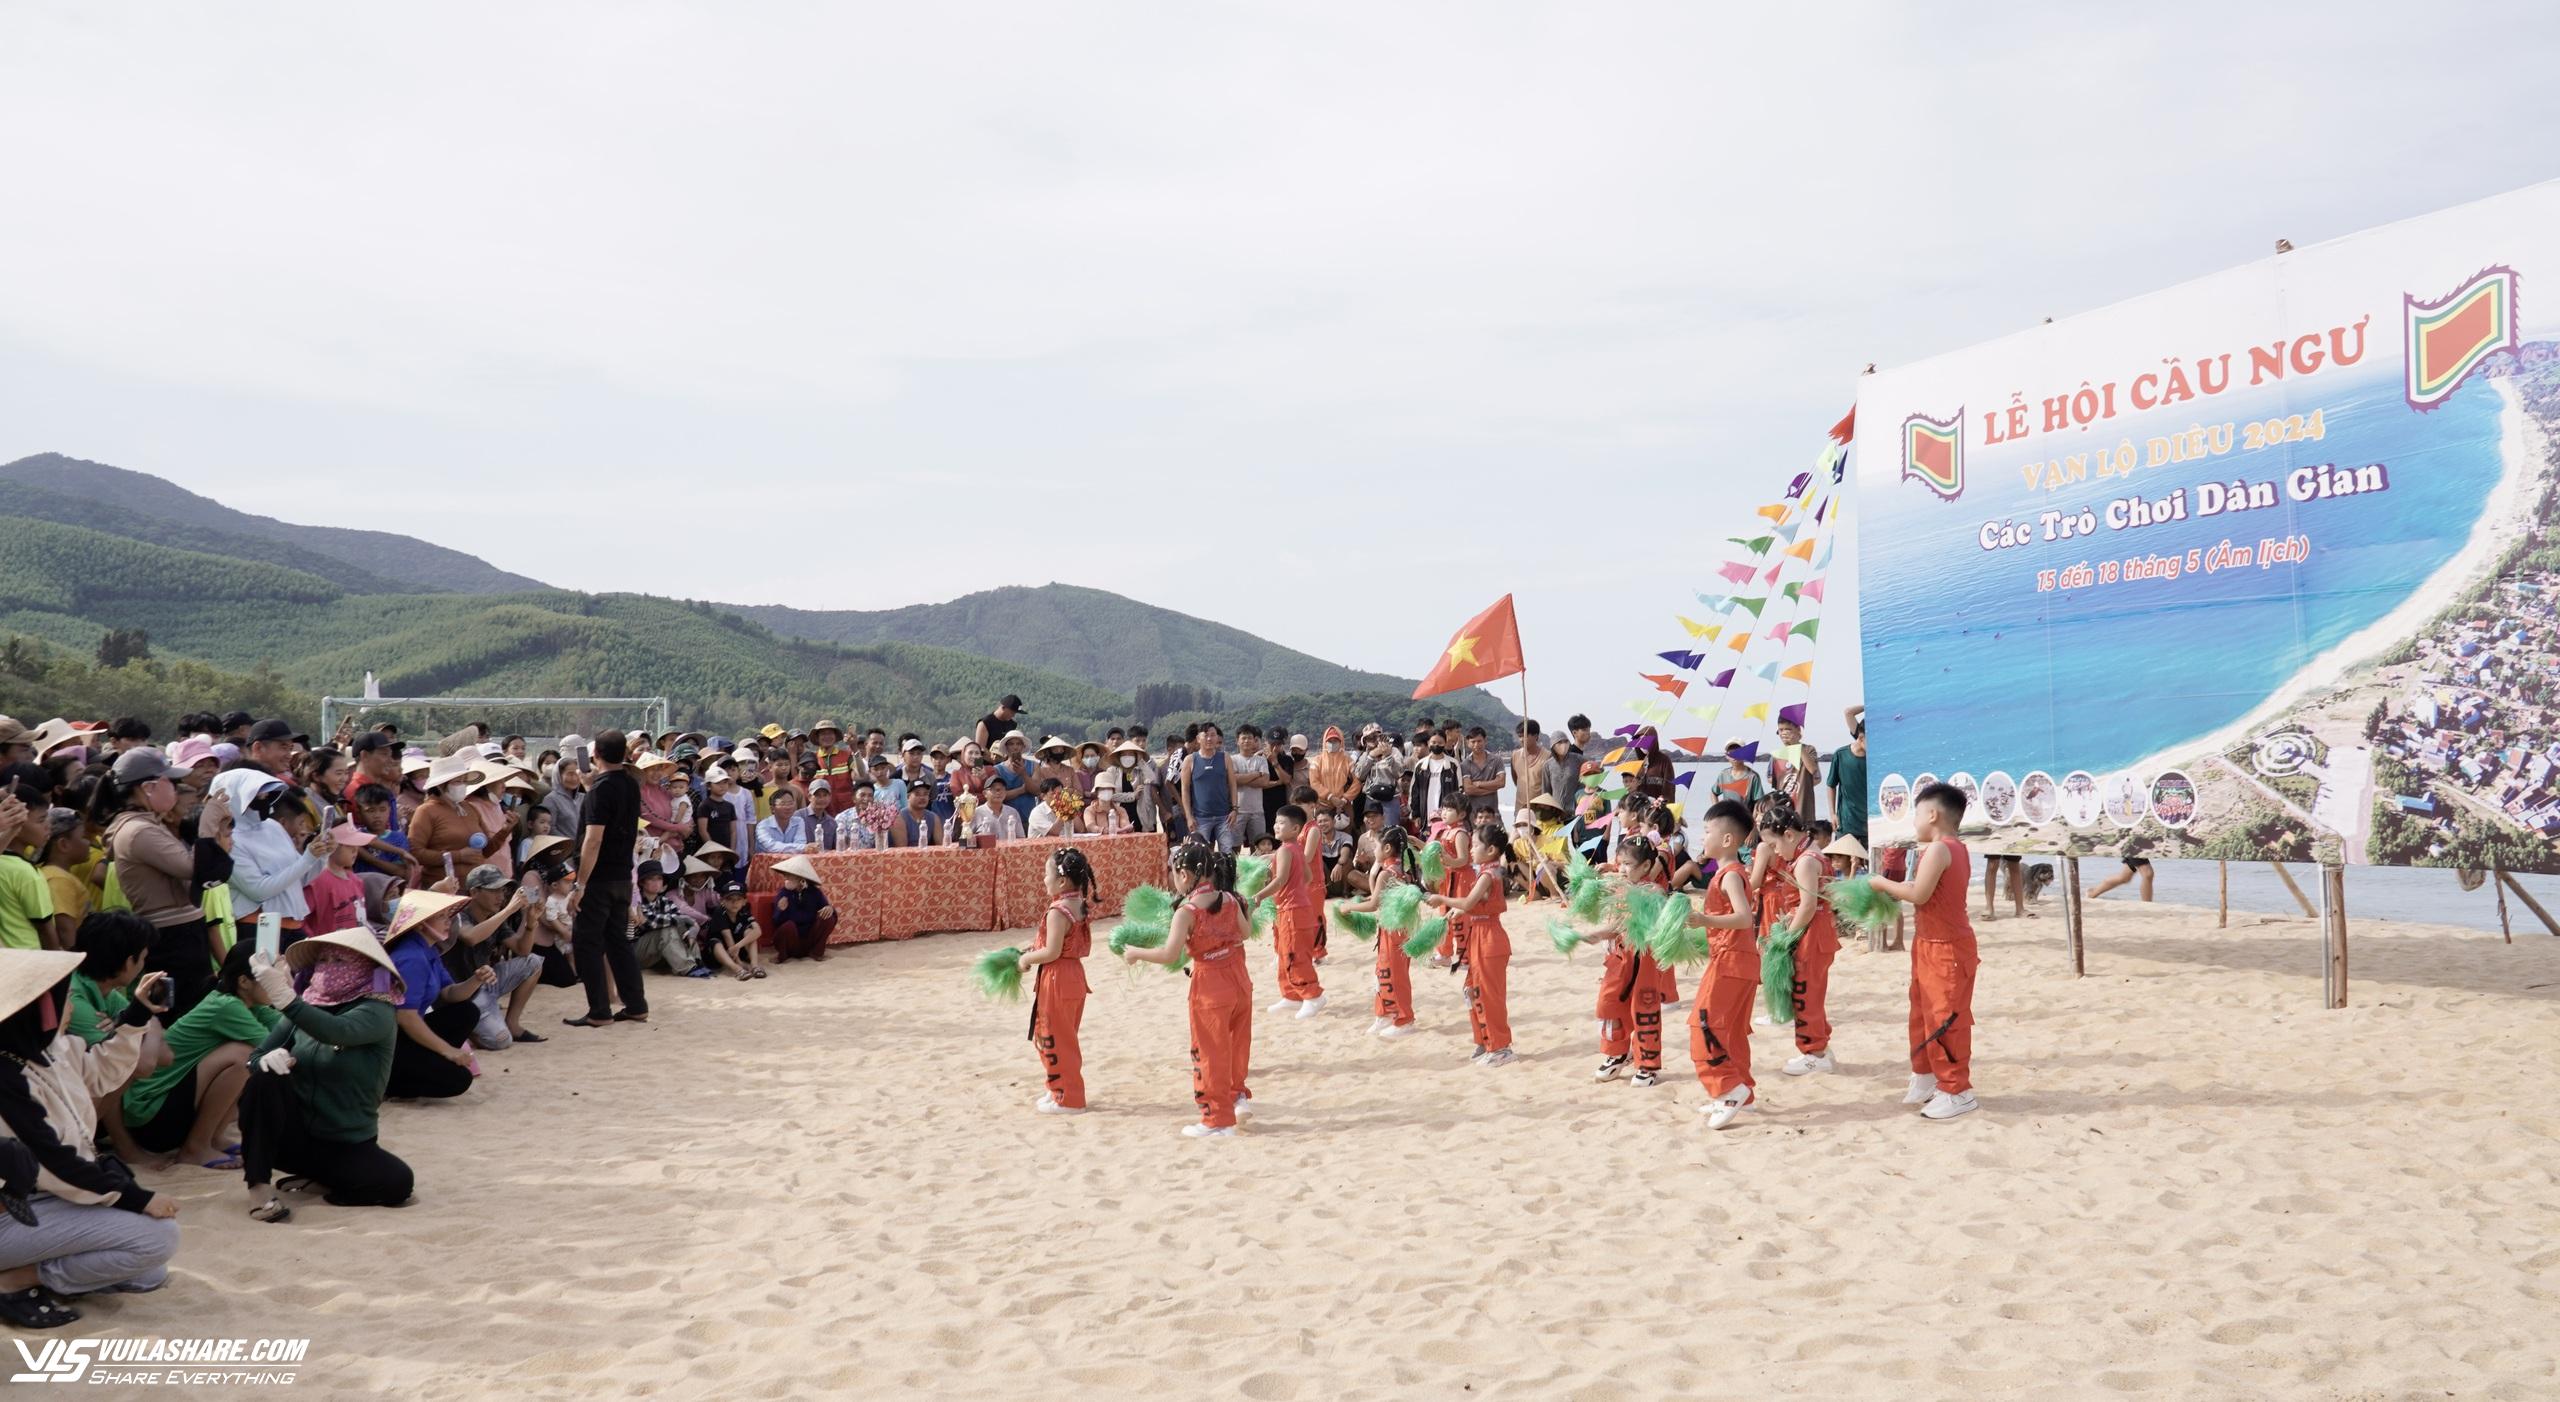 Lễ hội cầu ngư Lộ Diêu: Giữ gìn bản sắc văn hóa biển- Ảnh 7.